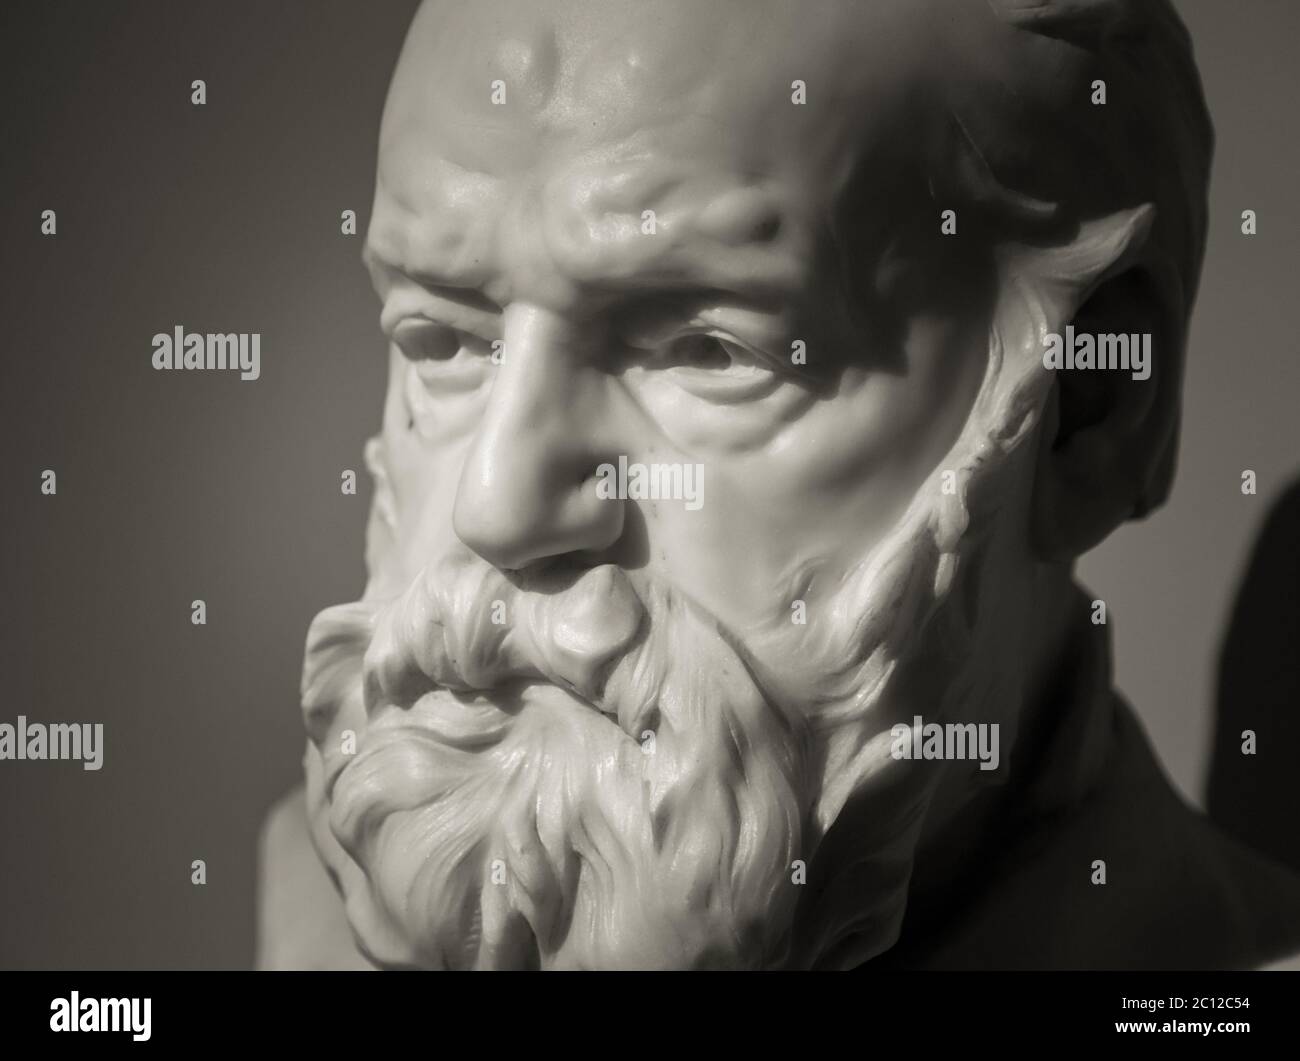 Das antike Marmorportrait des Mannes mit Bart Stockfoto